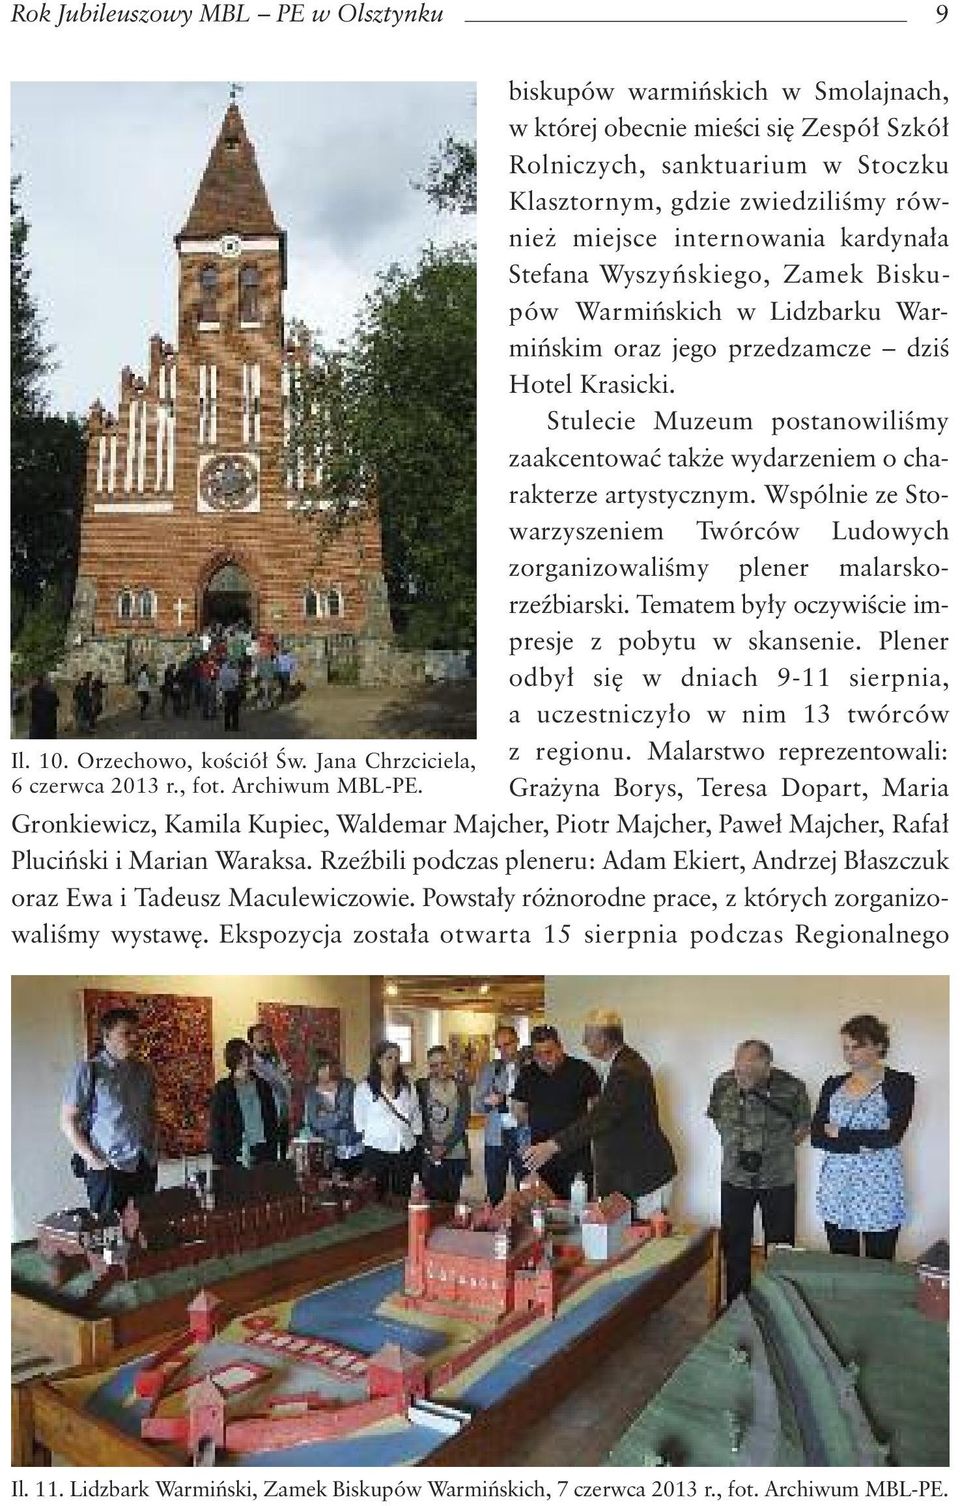 Zamek Biskupów Warmiƒskich w Lidzbarku Warmiƒskim oraz jego przedzamcze dziê Hotel Krasicki. Stulecie Muzeum postanowiliêmy zaakcentowaç tak e wydarzeniem o charakterze artystycznym.